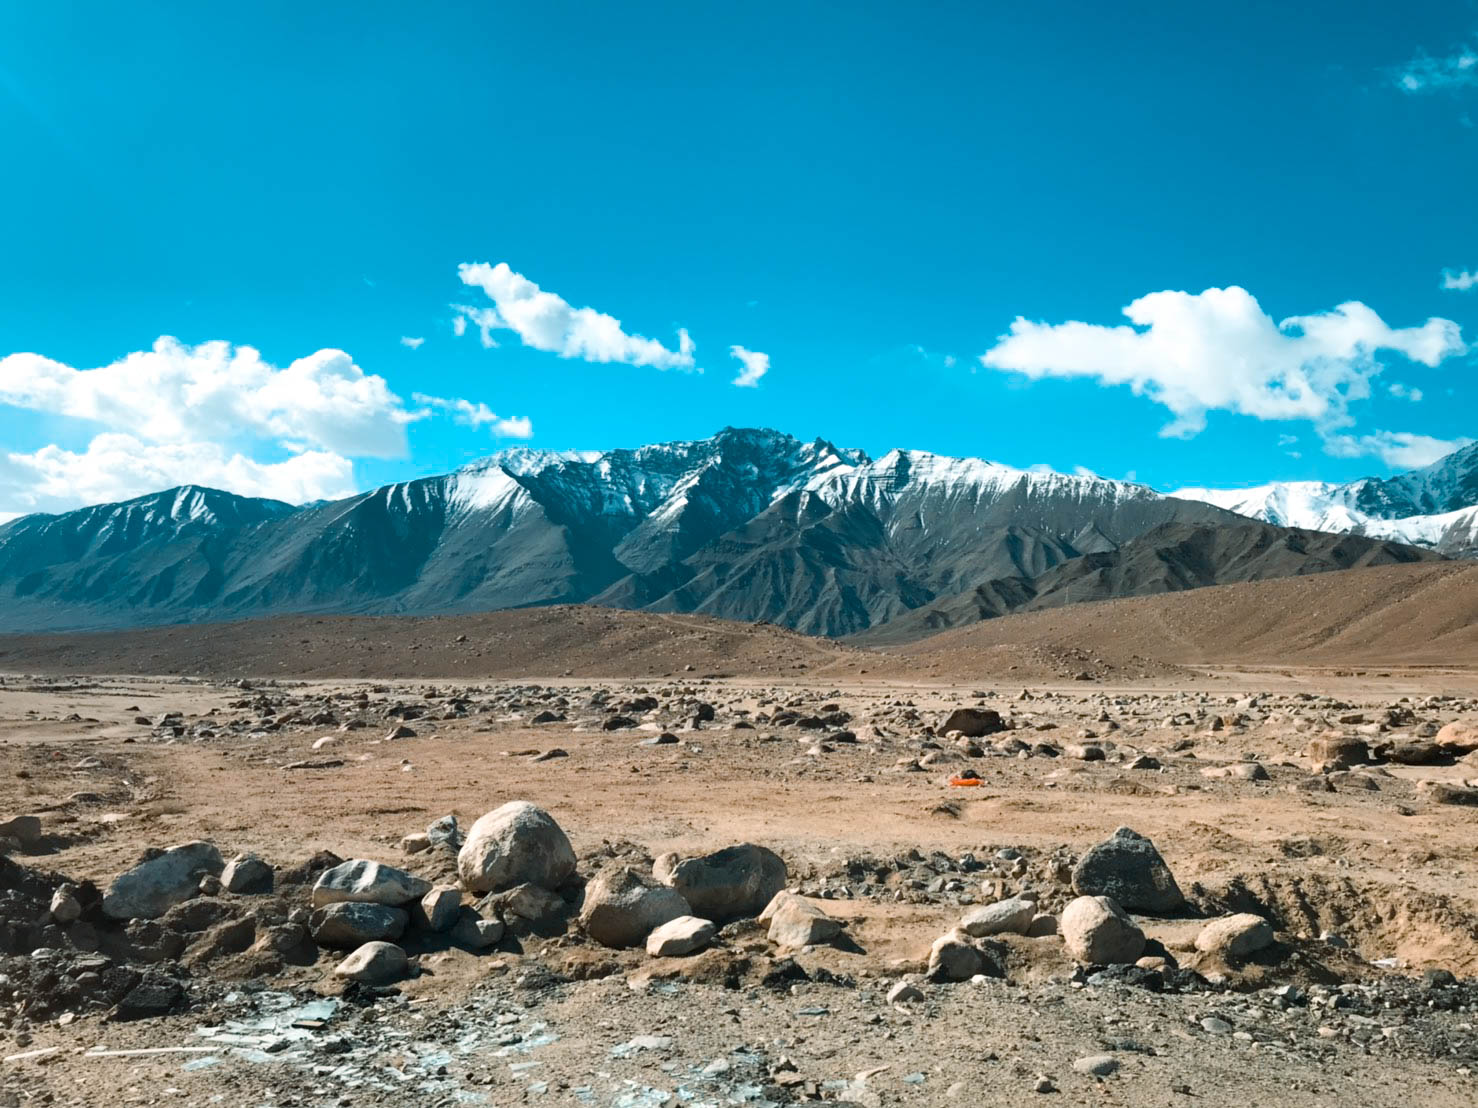 ทัวร์เลห์ ลาดักห์ เที่ยวเลห์ ลาดักห์ Leh Ladakh Tour leh ladakh